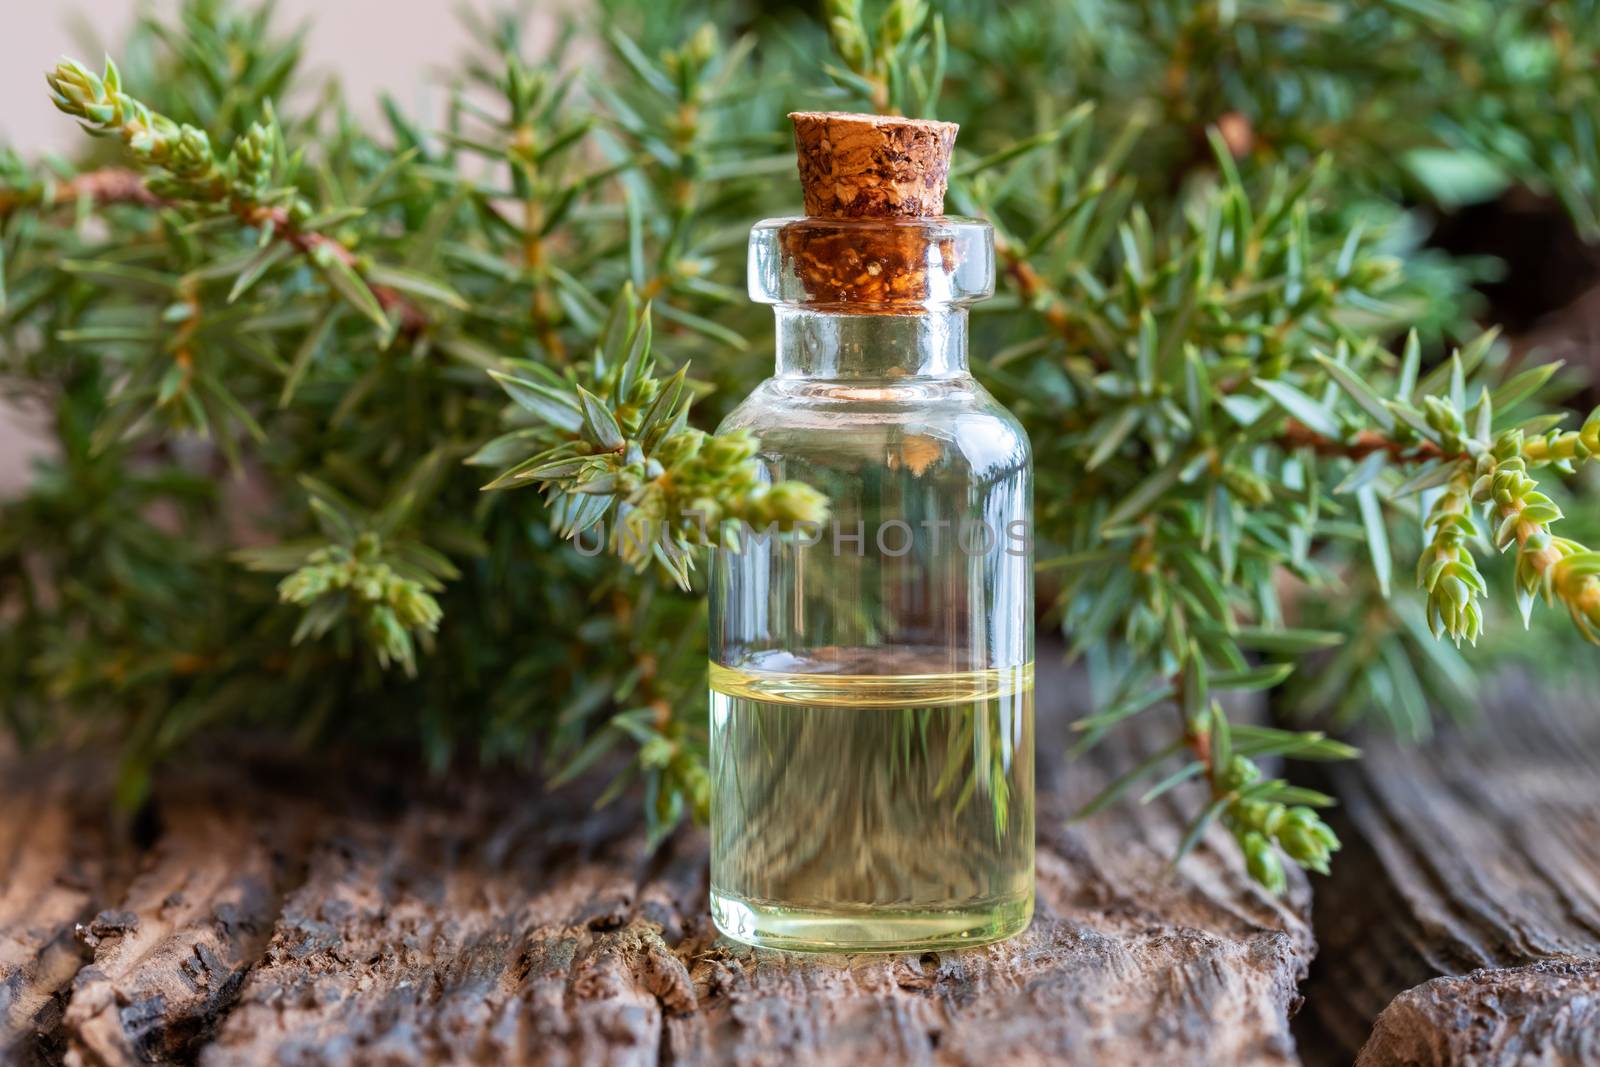 A bottle of juniper essential oil with fresh juniper branches by madeleine_steinbach